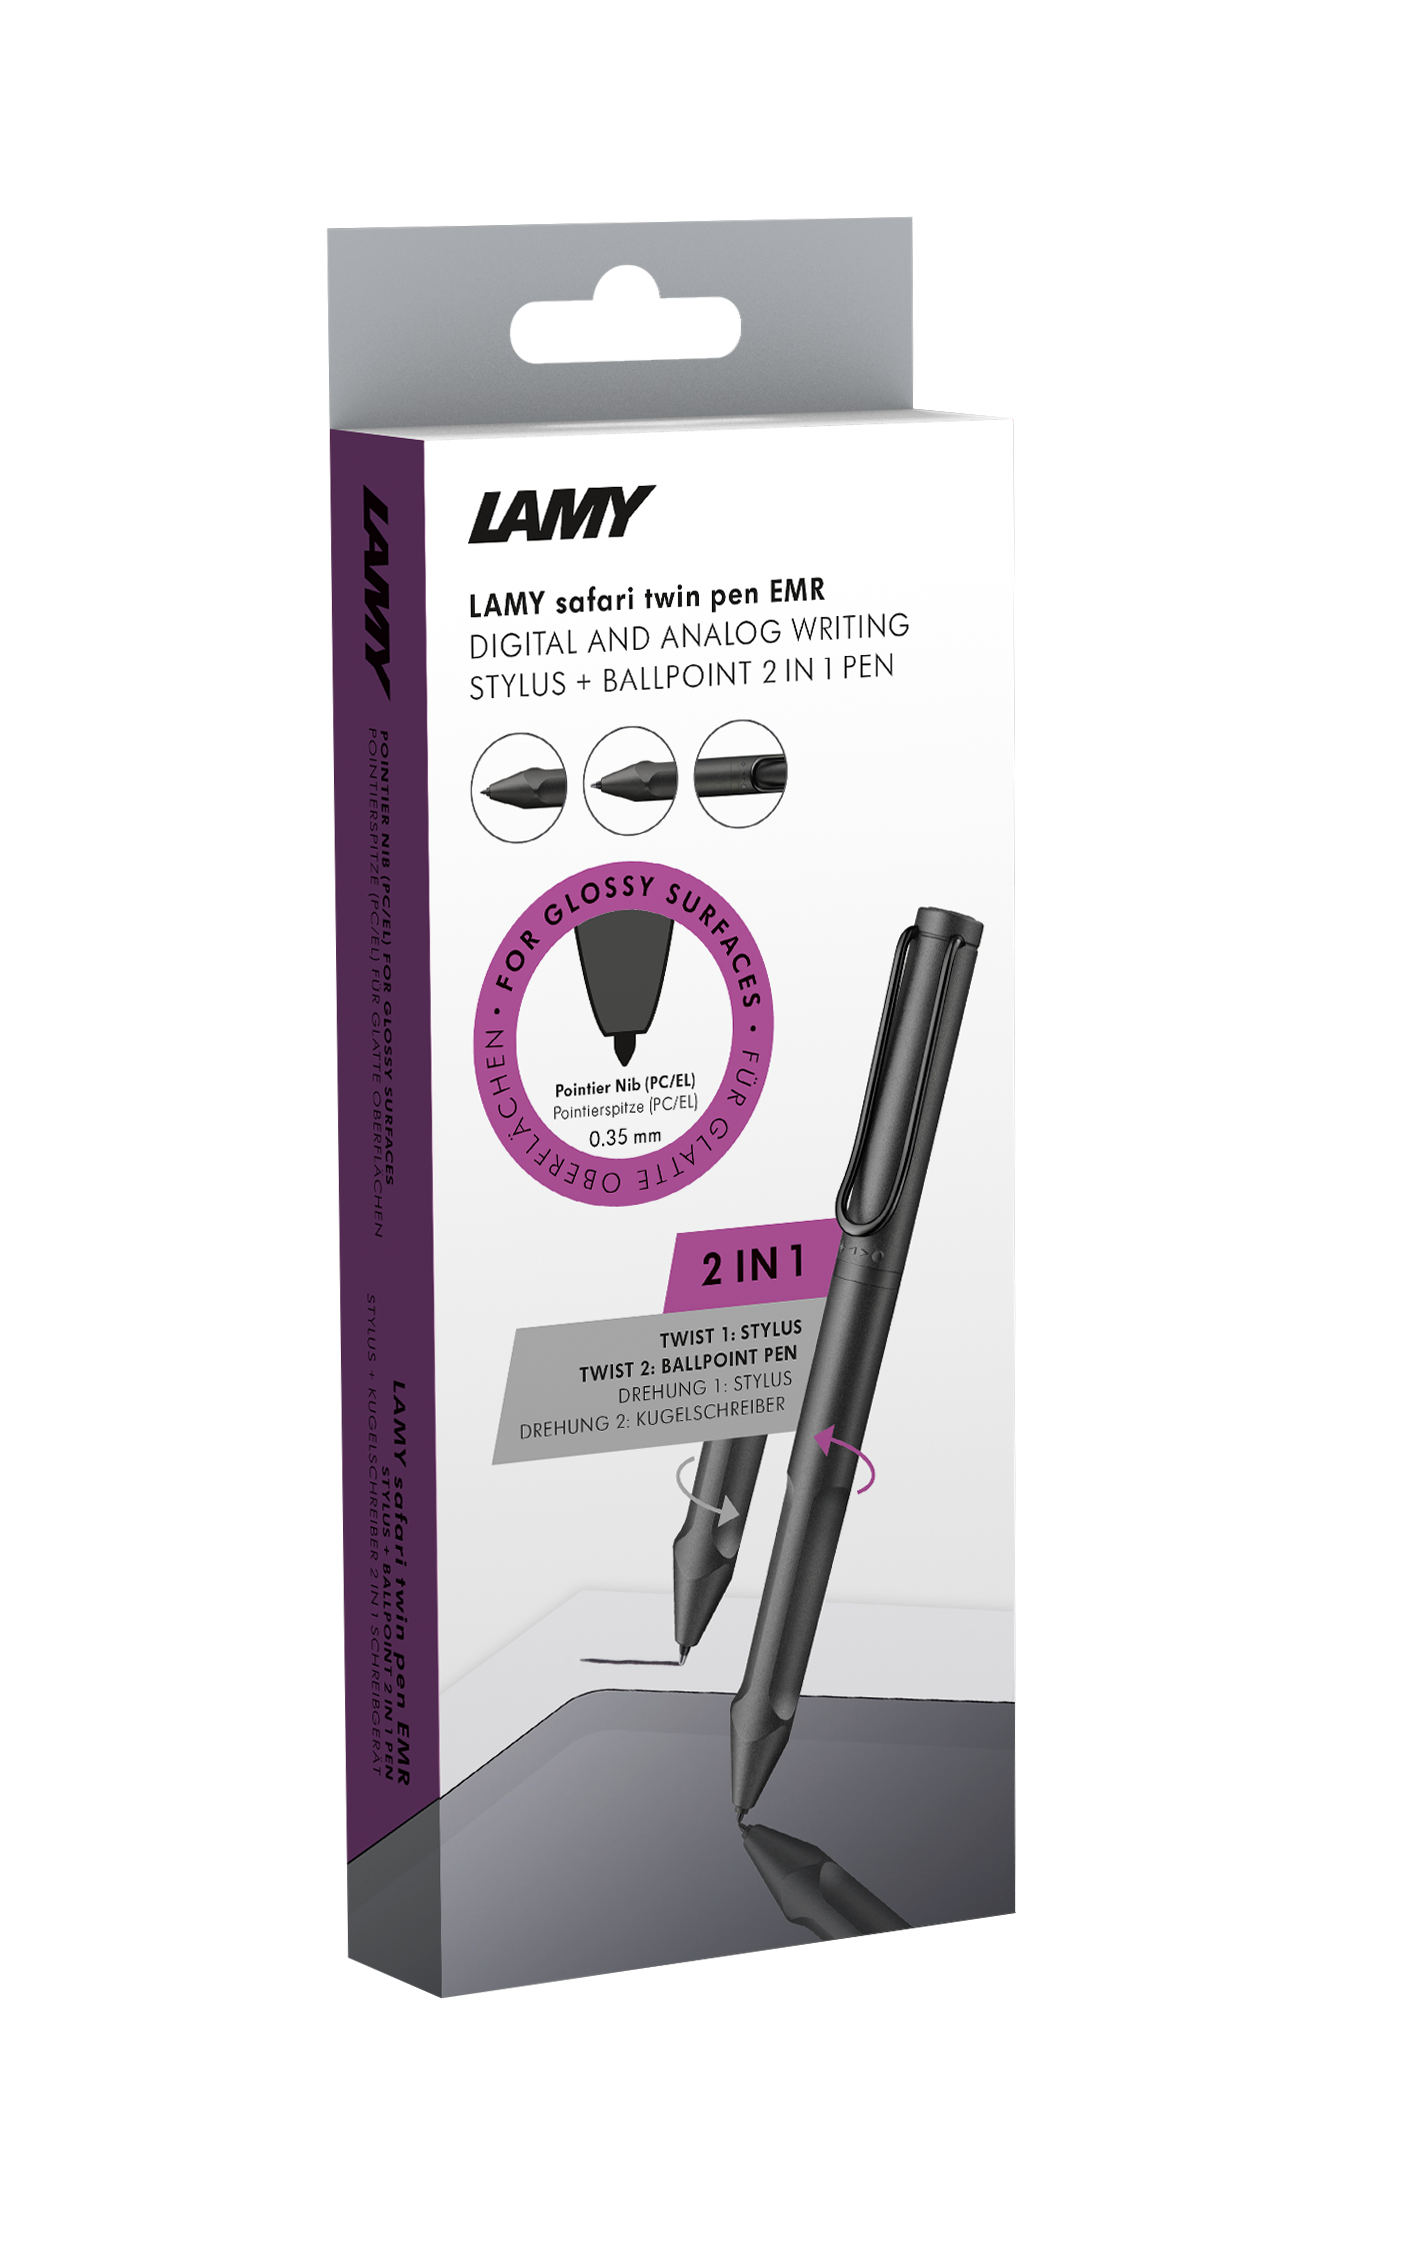 LAMY 644 Safari twin pen all black EMR PC/EL